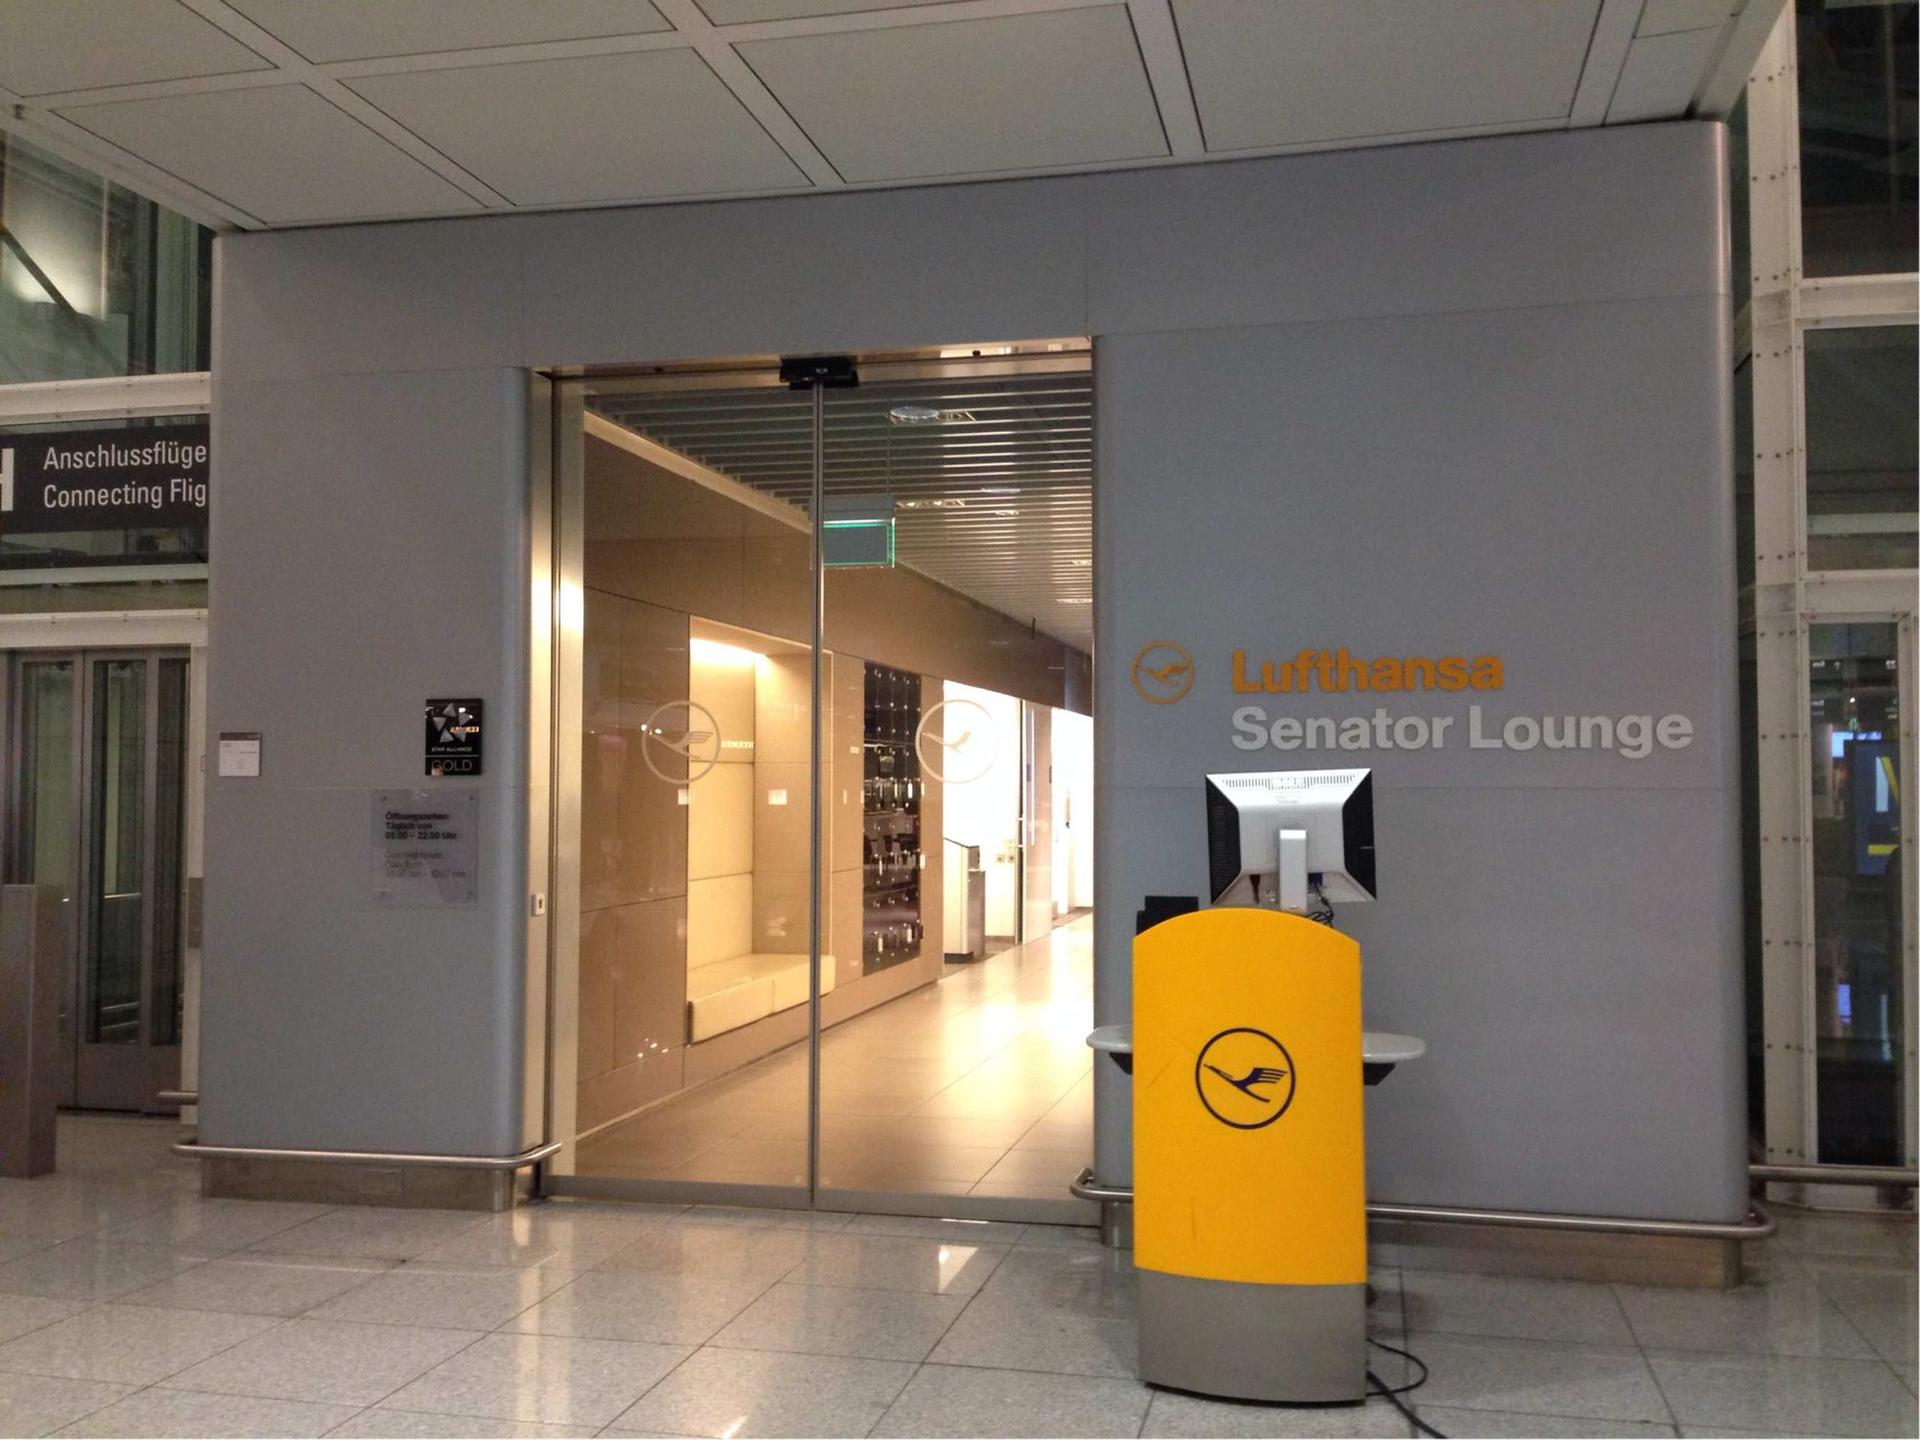 Lufthansa Senator Lounge (Gate G24, Schengen) image 5 of 5